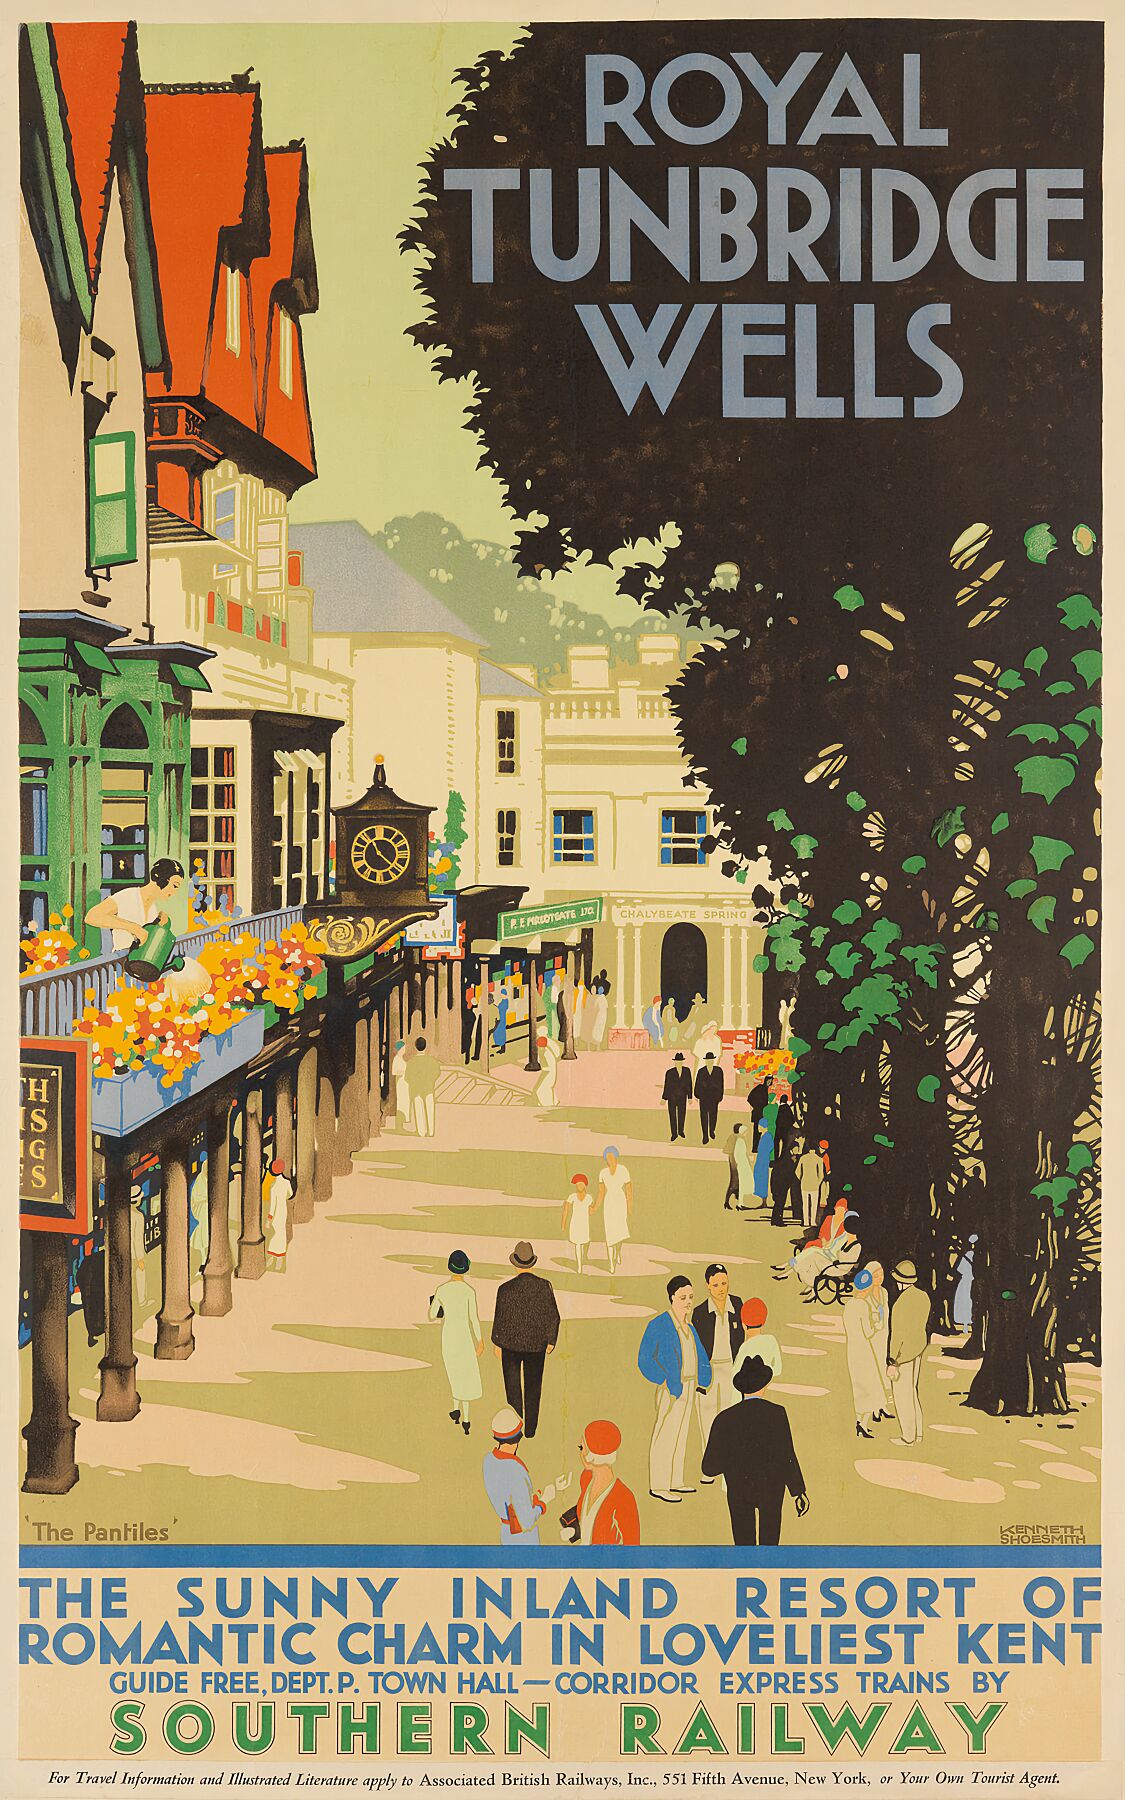 Royal Tunbridge Wells by Kenneth Shoemsith - 1939 